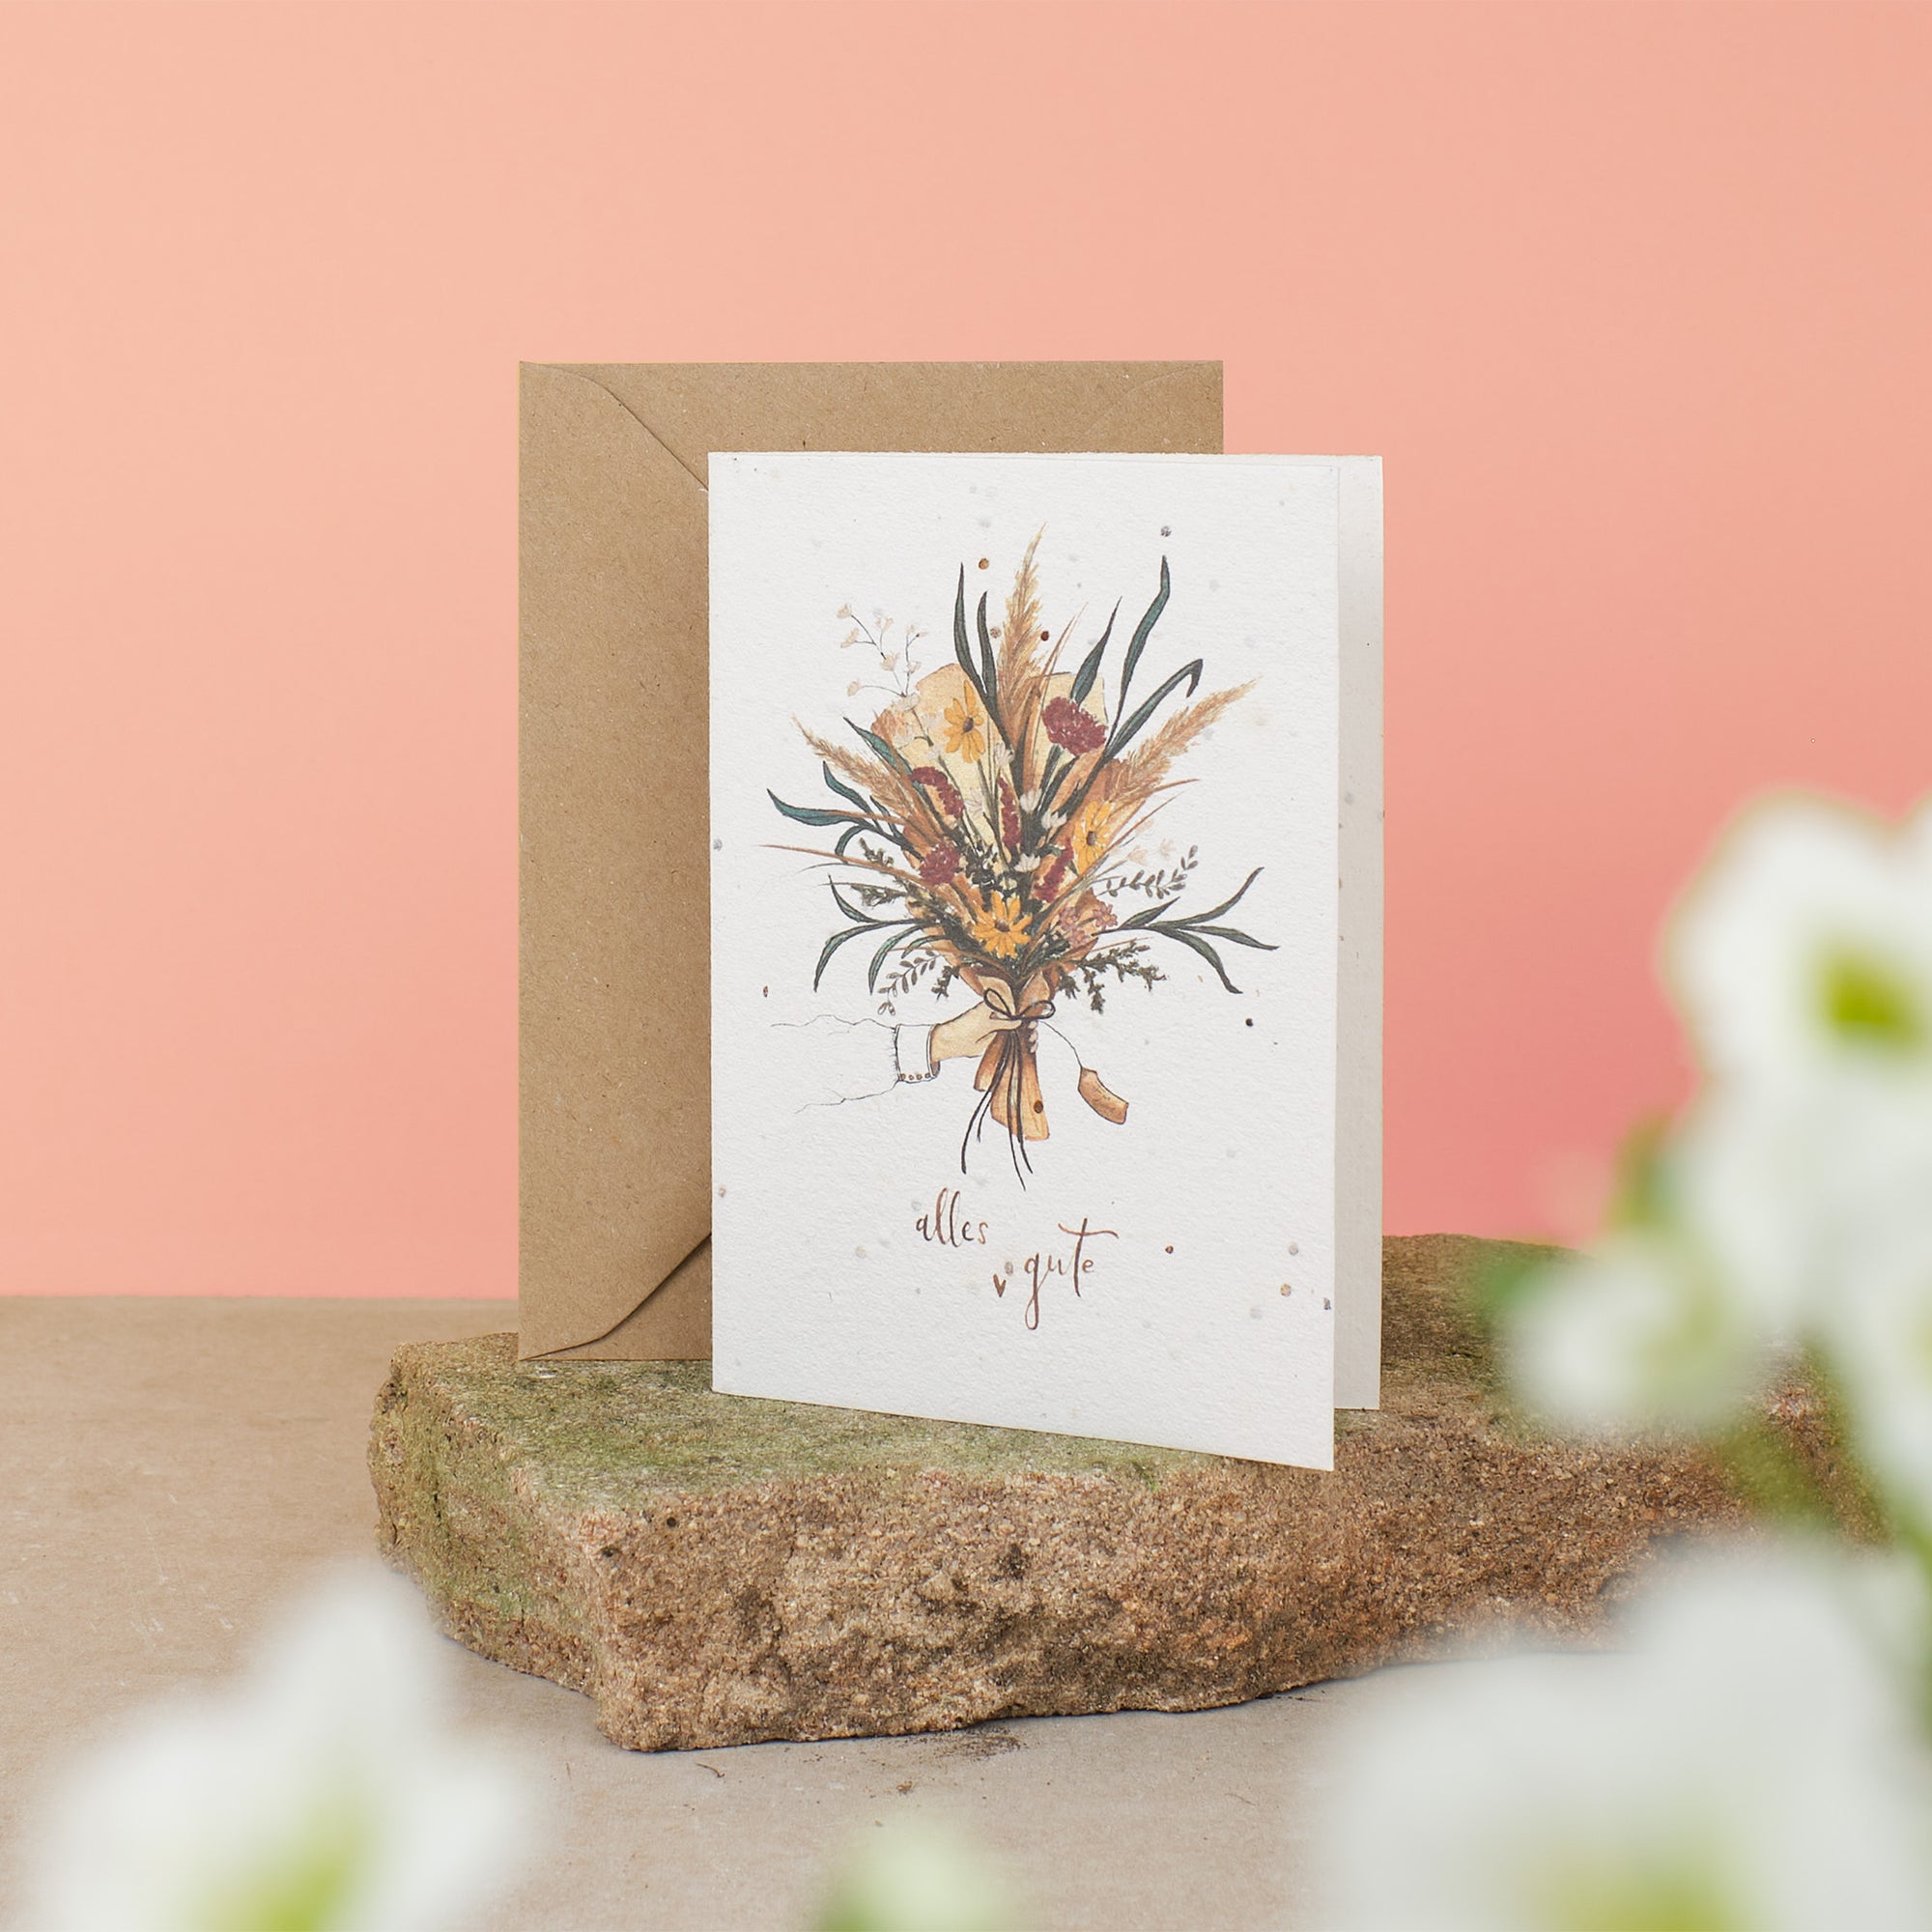 Einpflanzbare Faltkarte mit Blumenstrauß als Motiv und Schriftzug Alles Gute